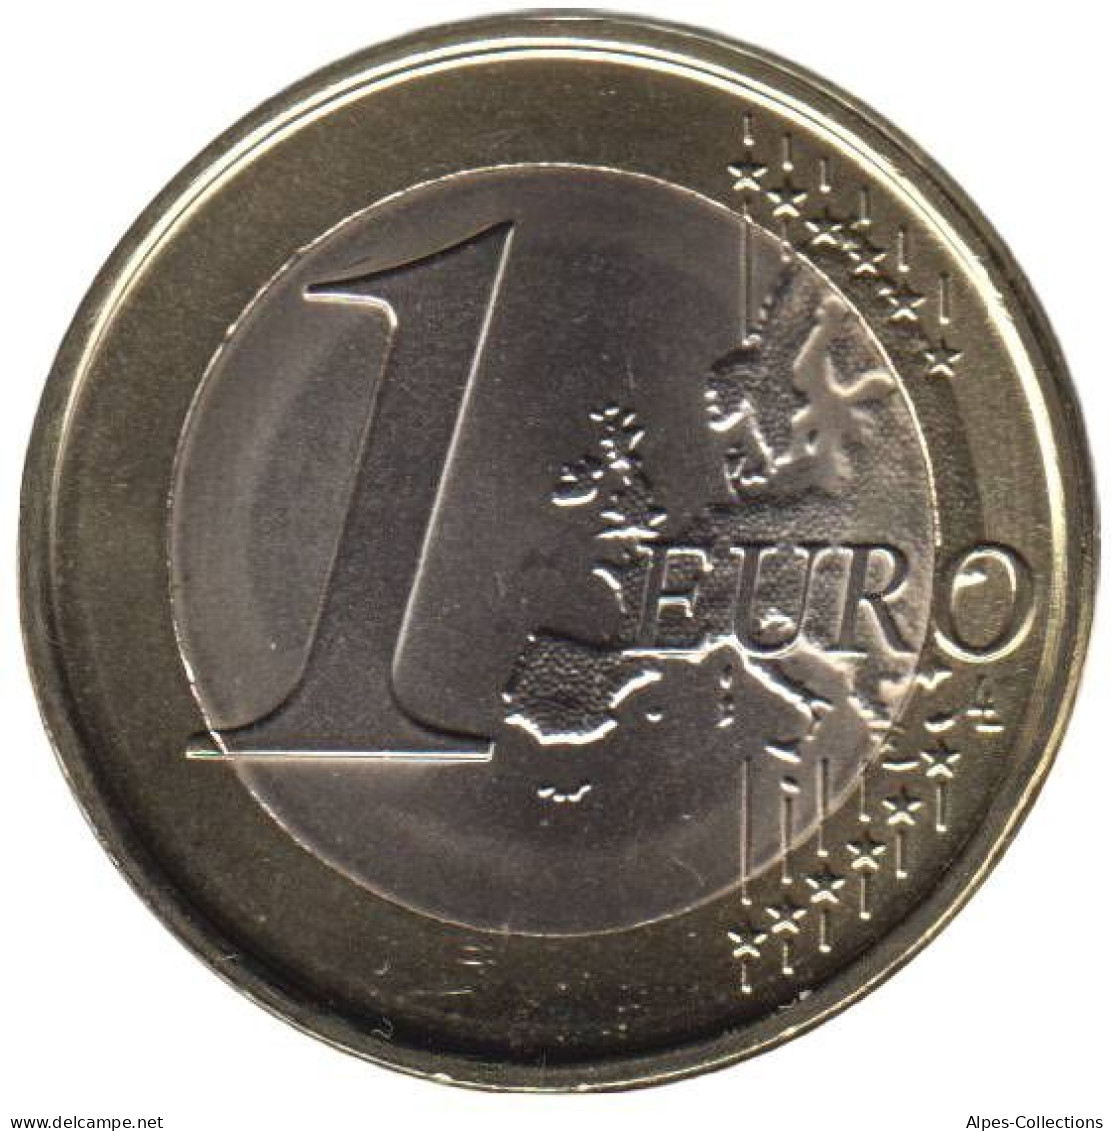 PO10009.1 - PORTUGAL - 1 Euro - 2009 - Portugal